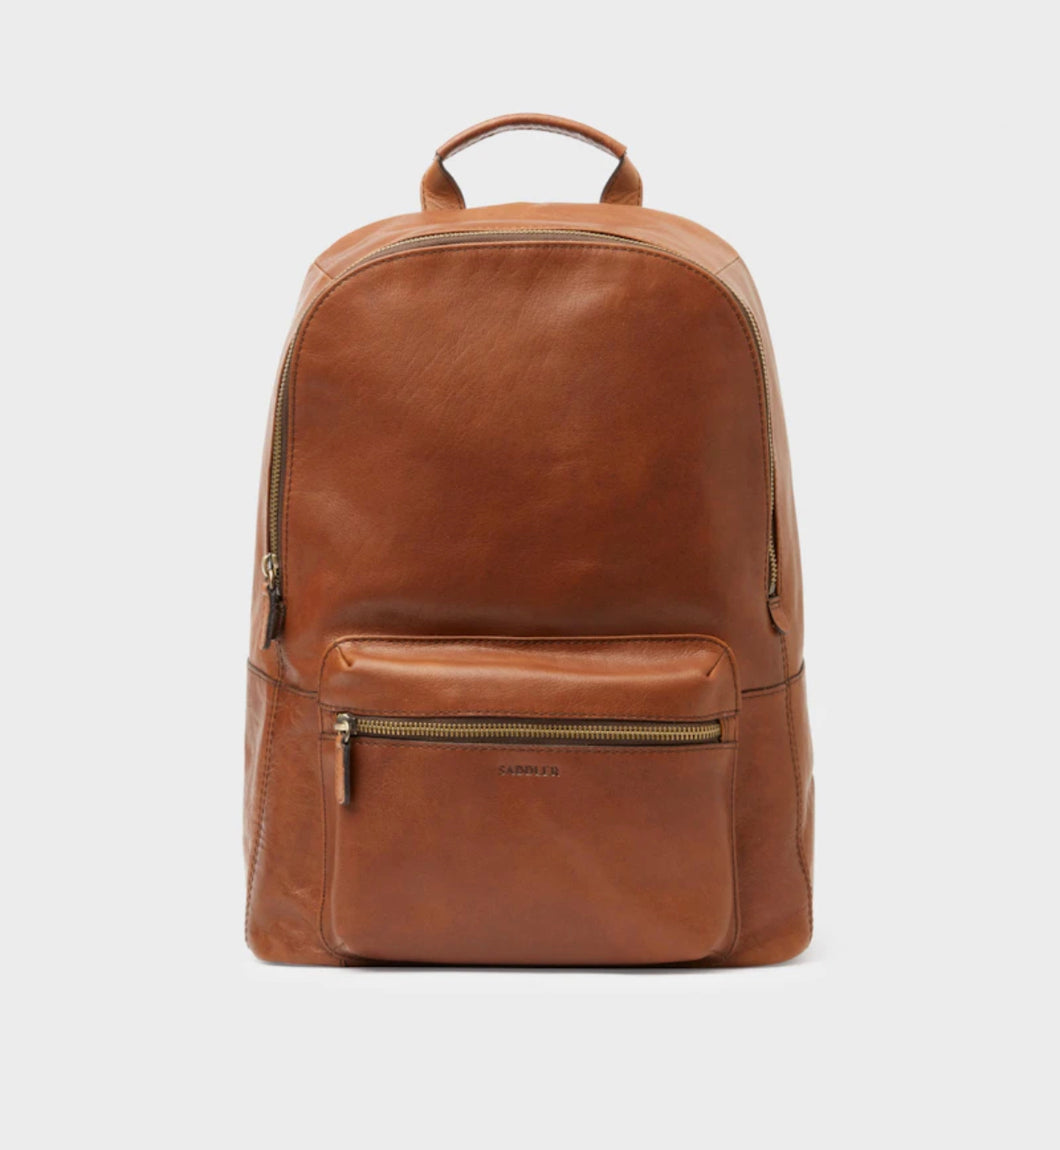 Saddler Afonso backpack